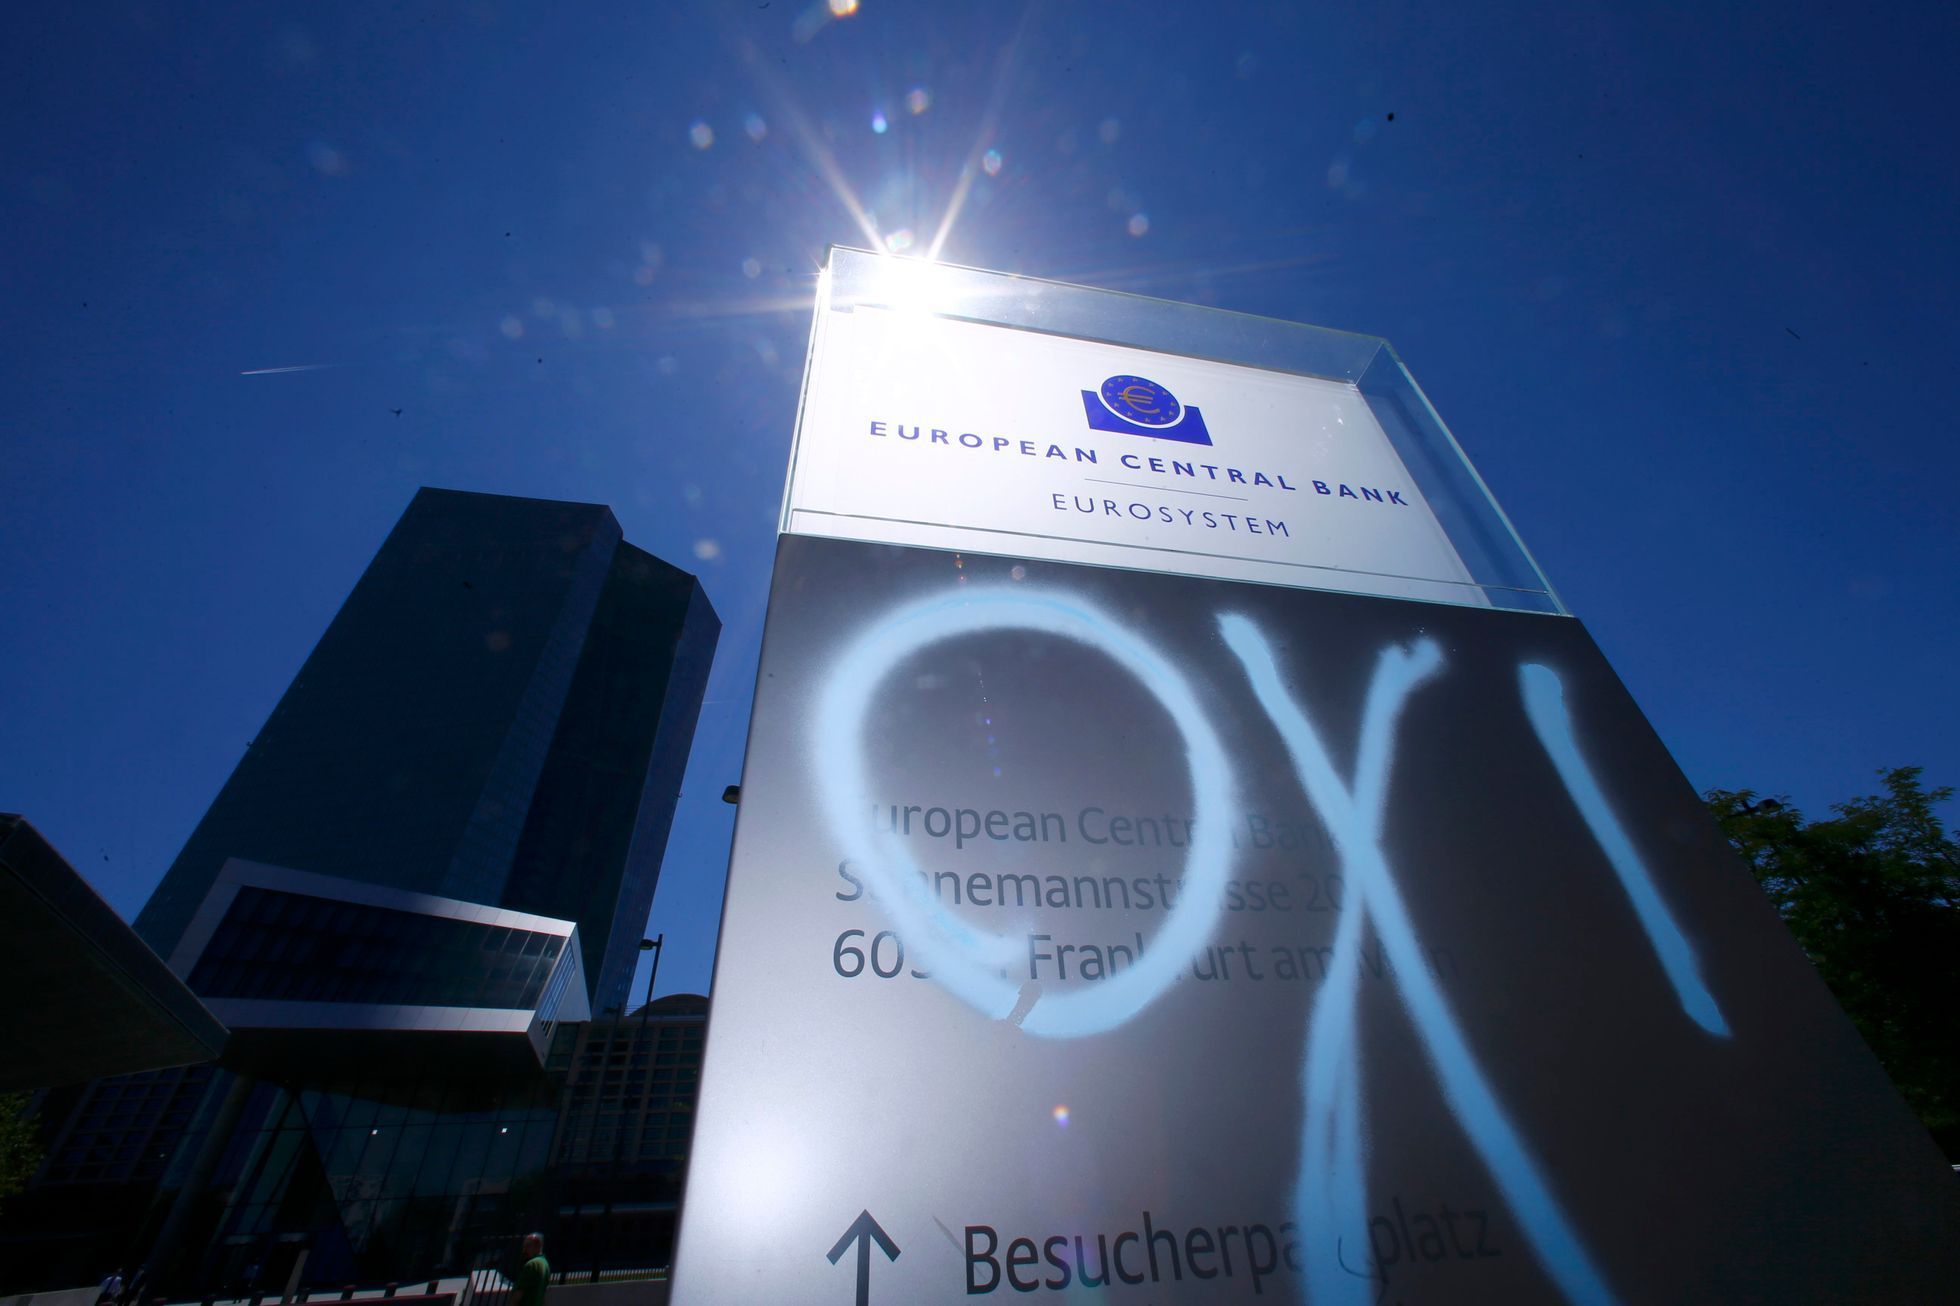 Řecké slovo "ne" někdo nasprejoval na sloup před sídlem Evropské centrální banky ve Frankfurtu.